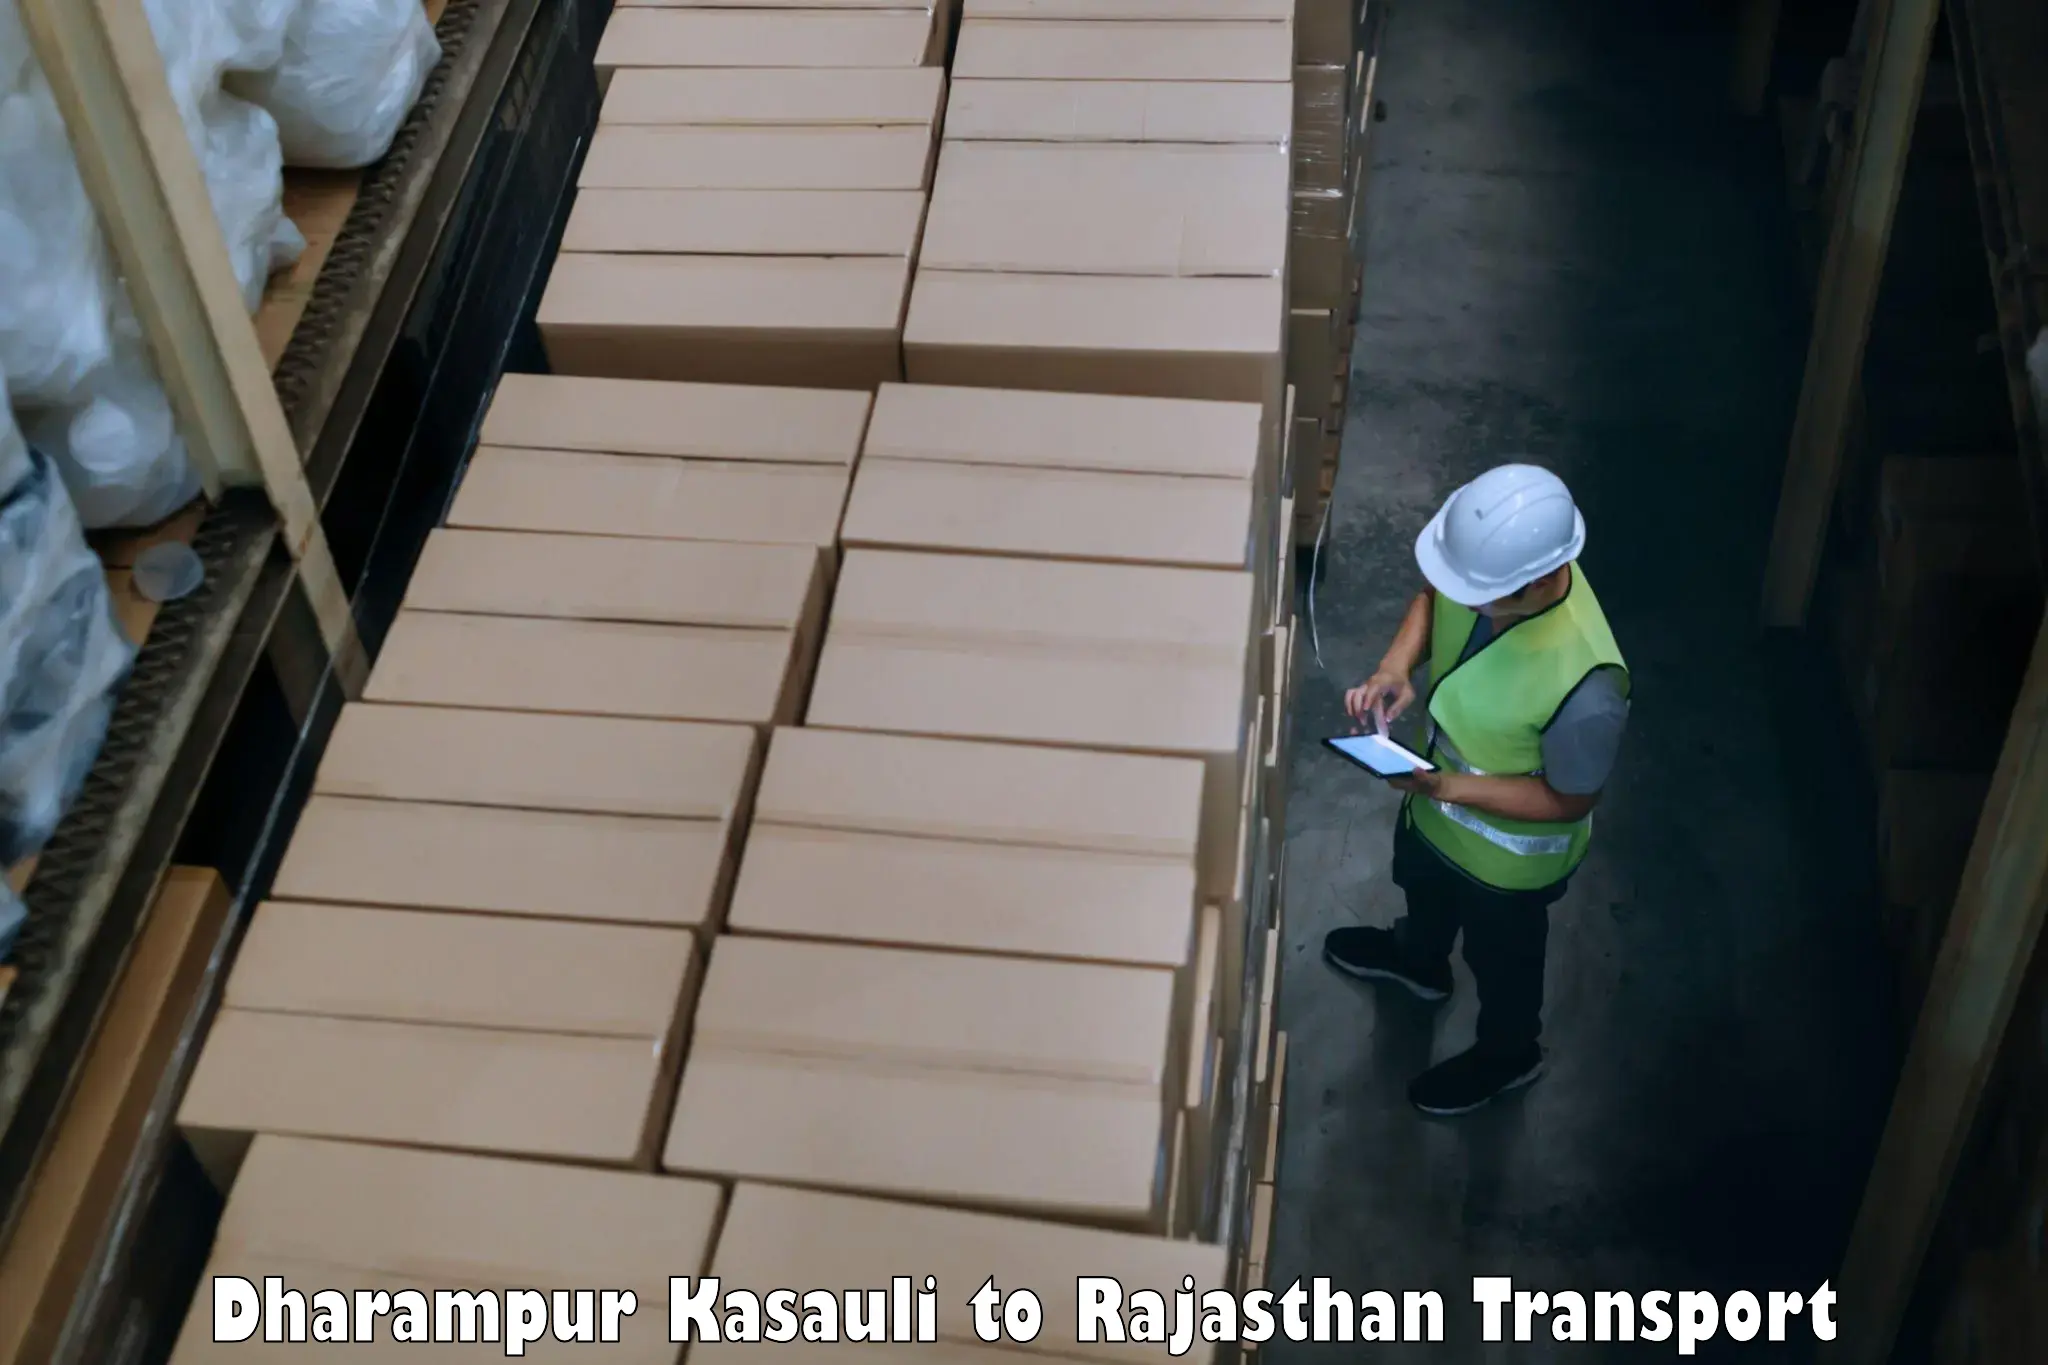 Cargo transport services Dharampur Kasauli to Hindaun